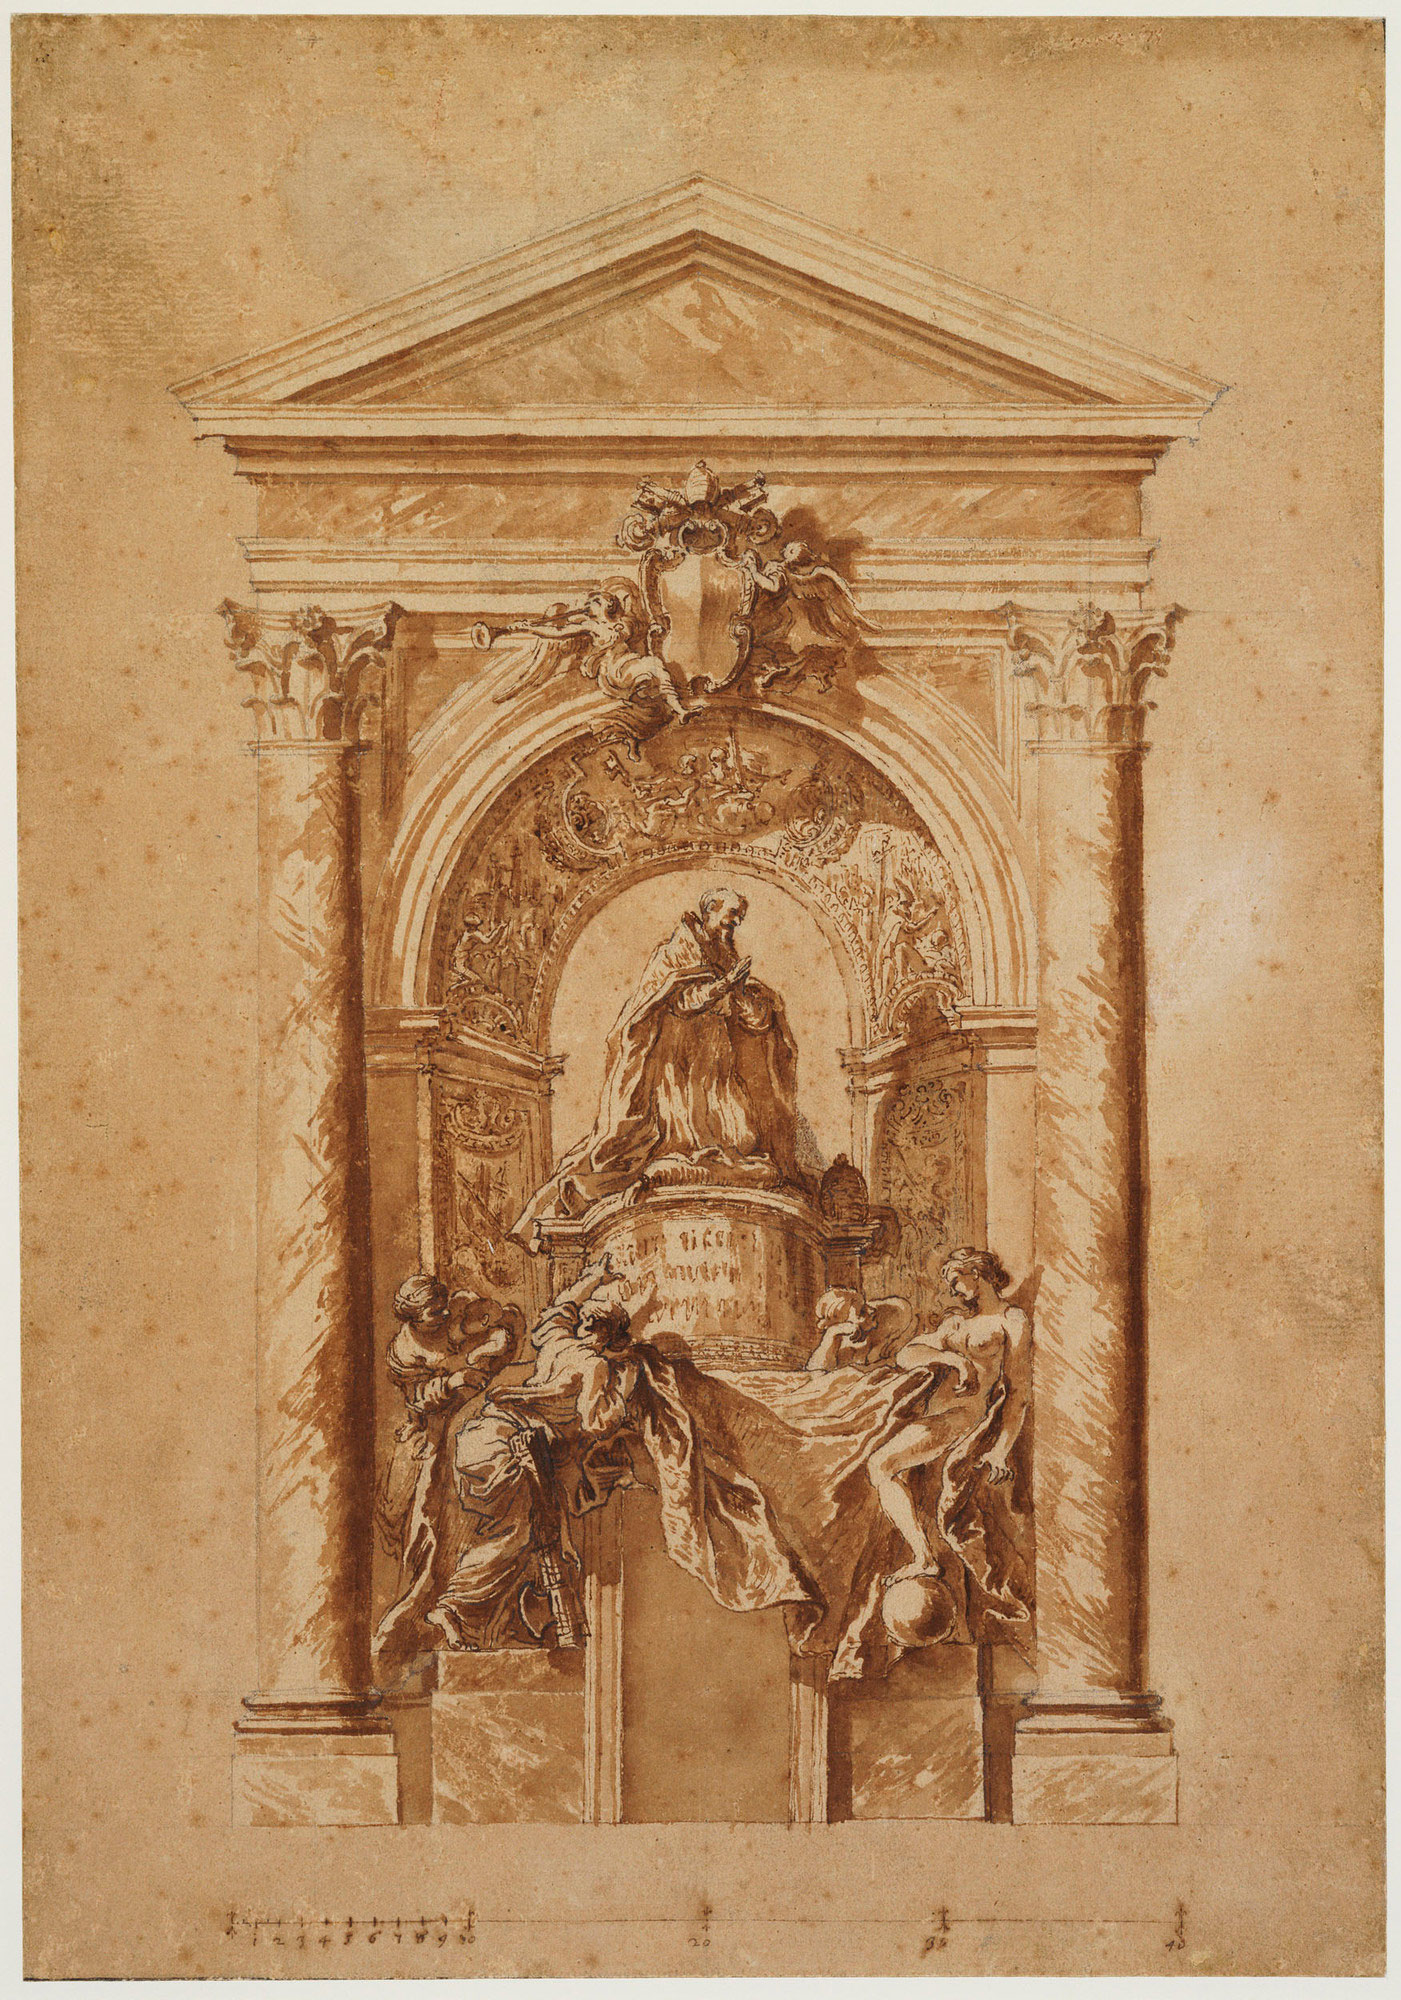 Gian Lorenzo Bernini, Studio per la Tomba di Alessandro VII (1662-1666 circa; penna, acquerello e gessetto su carta, 440 x 307 mm; Windsor, Royal Collection)
